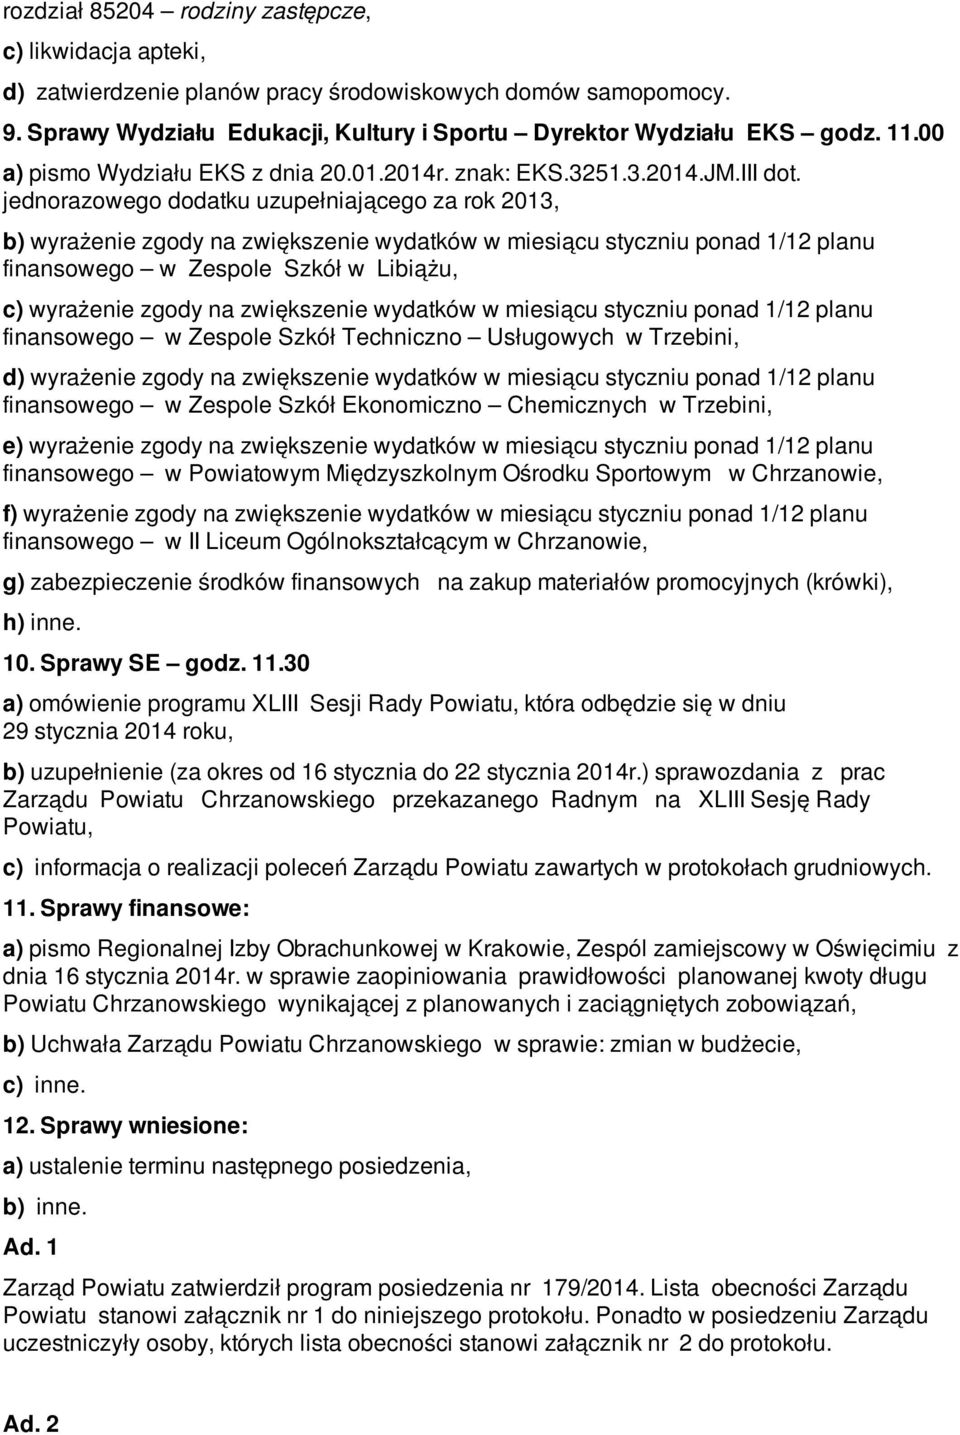 jednorazowego dodatku uzupełniającego za rok 2013, b) wyrażenie zgody na zwiększenie wydatków w miesiącu styczniu ponad 1/12 planu finansowego w Zespole Szkół w Libiążu, c) wyrażenie zgody na